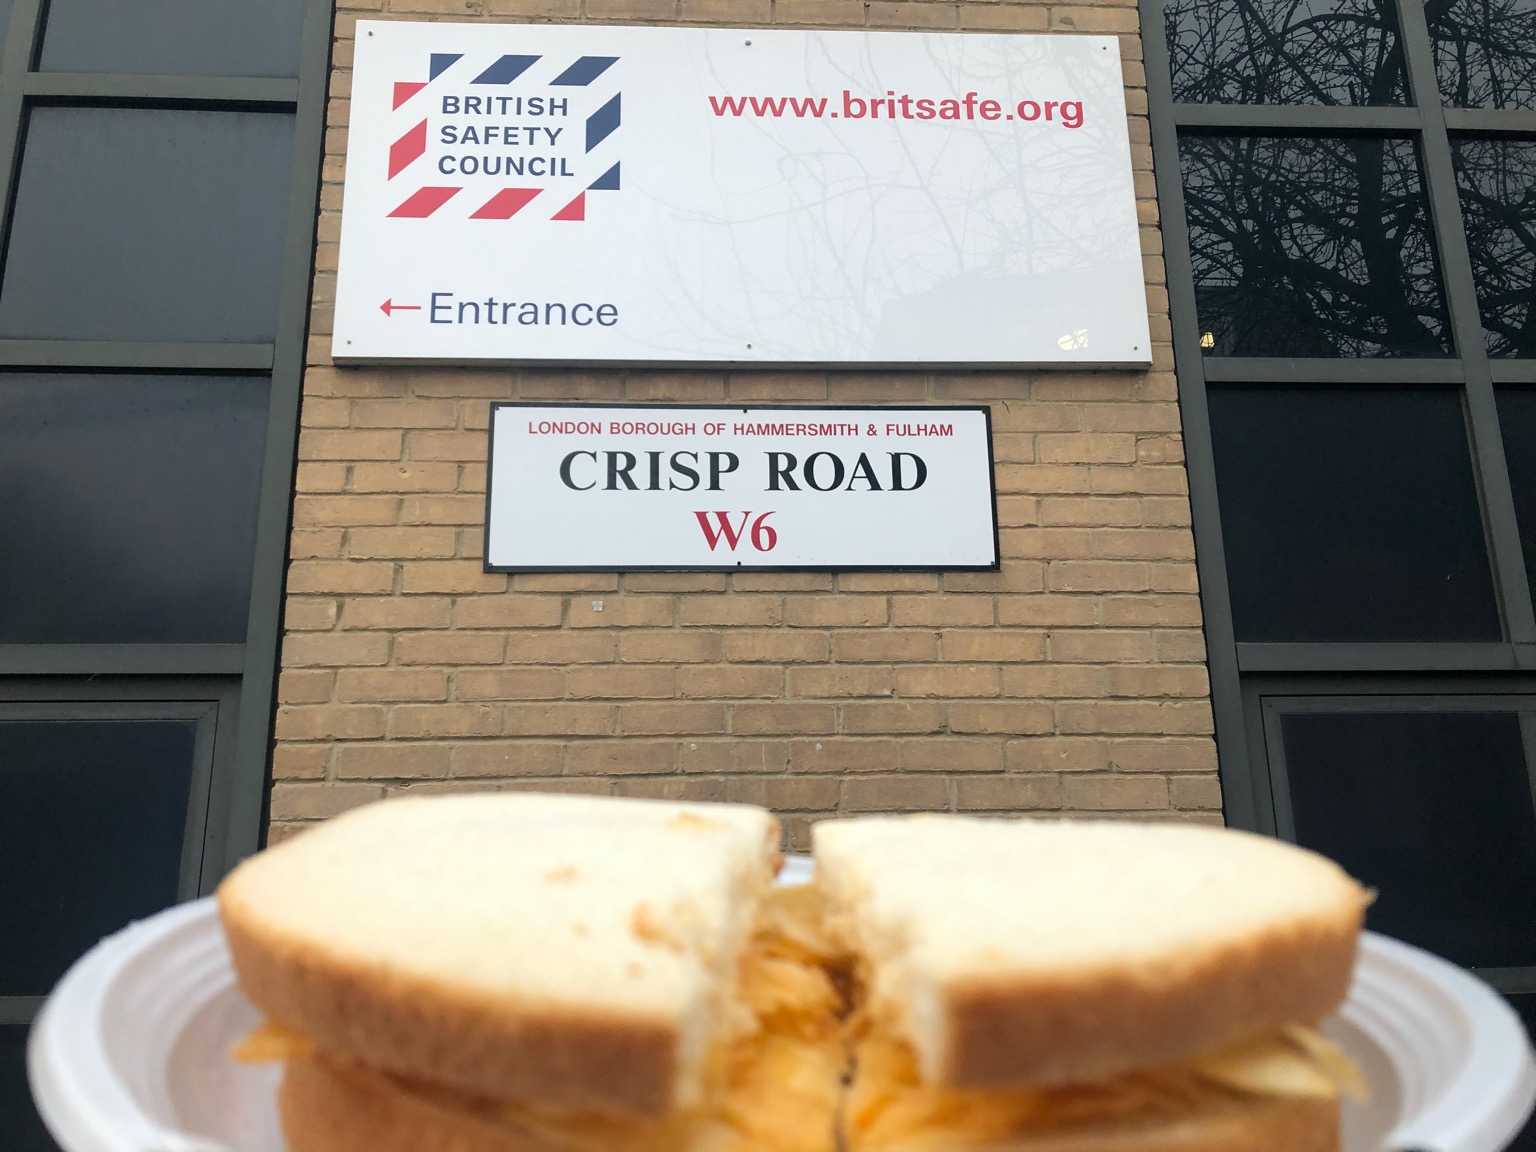 Crisp sandwich held up in front of Crisp Road sign